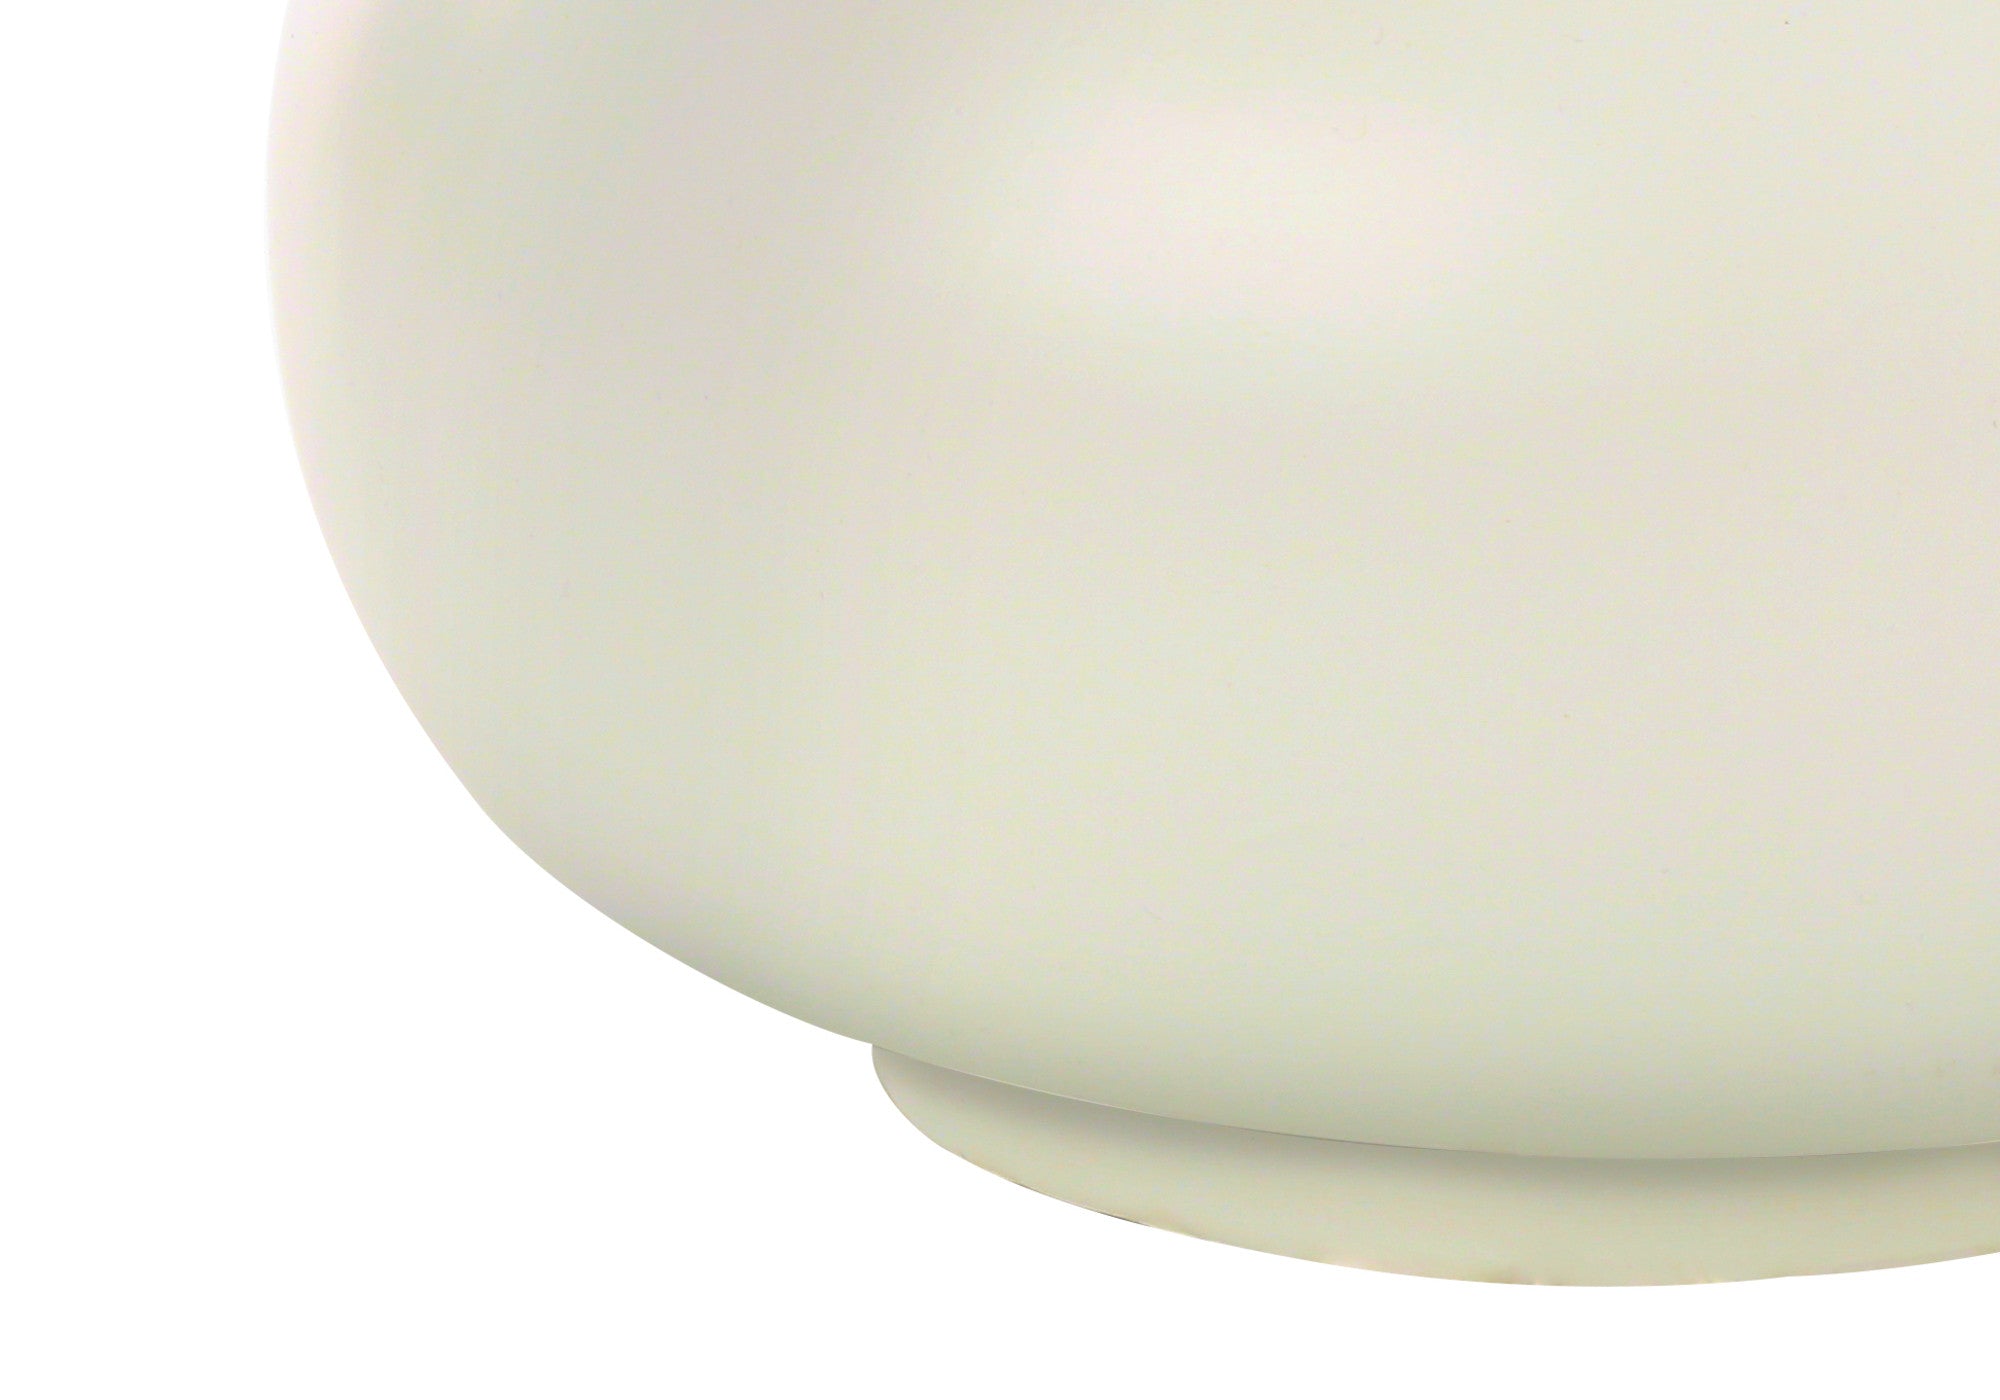 25" Cream Ceramic Gourd Table Lamp With Cream Drum Shade